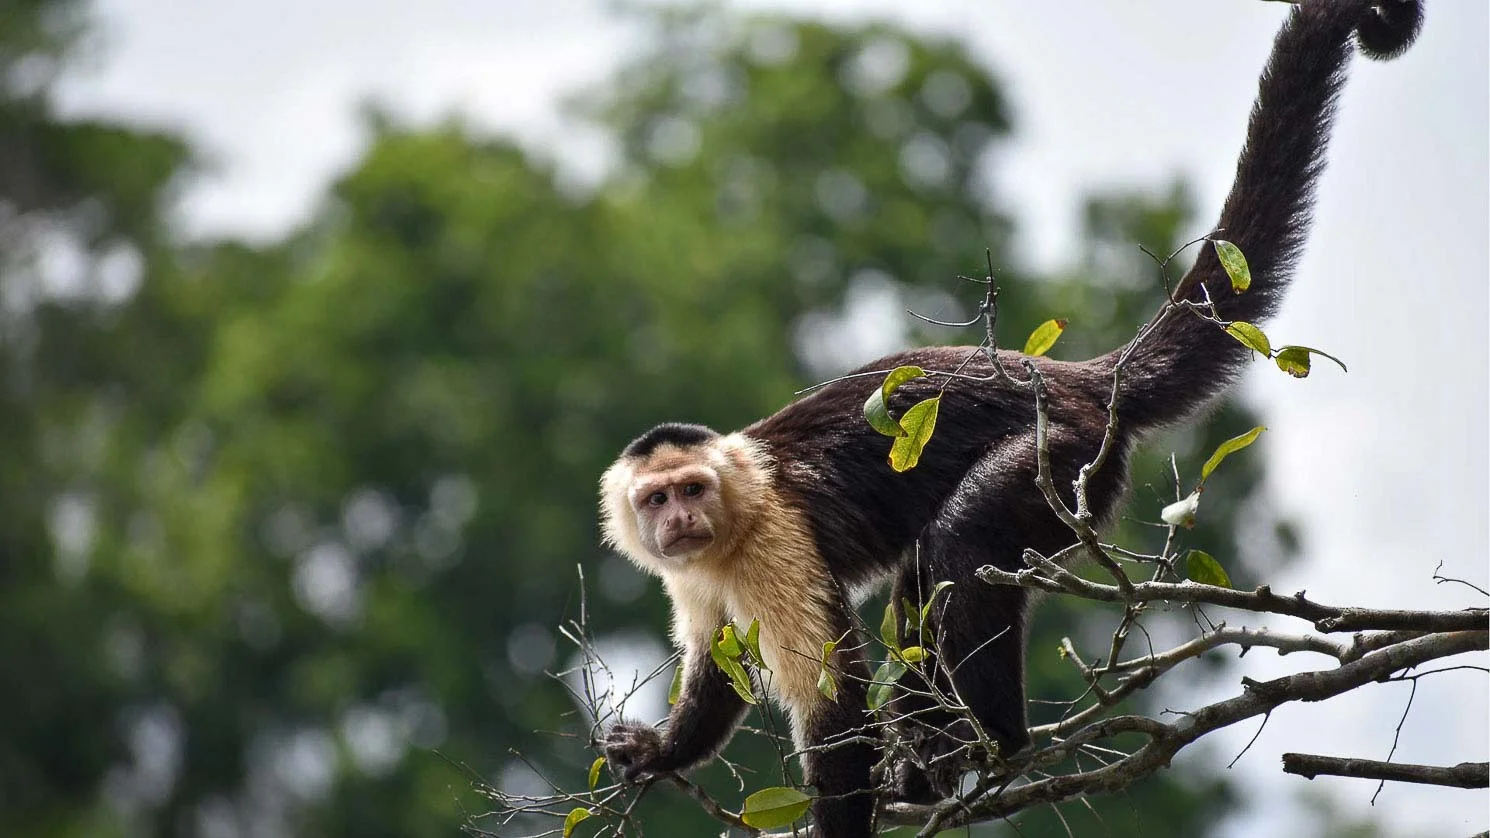 Monkey tour in Panama, Capuchin monkey on Monkey Island.